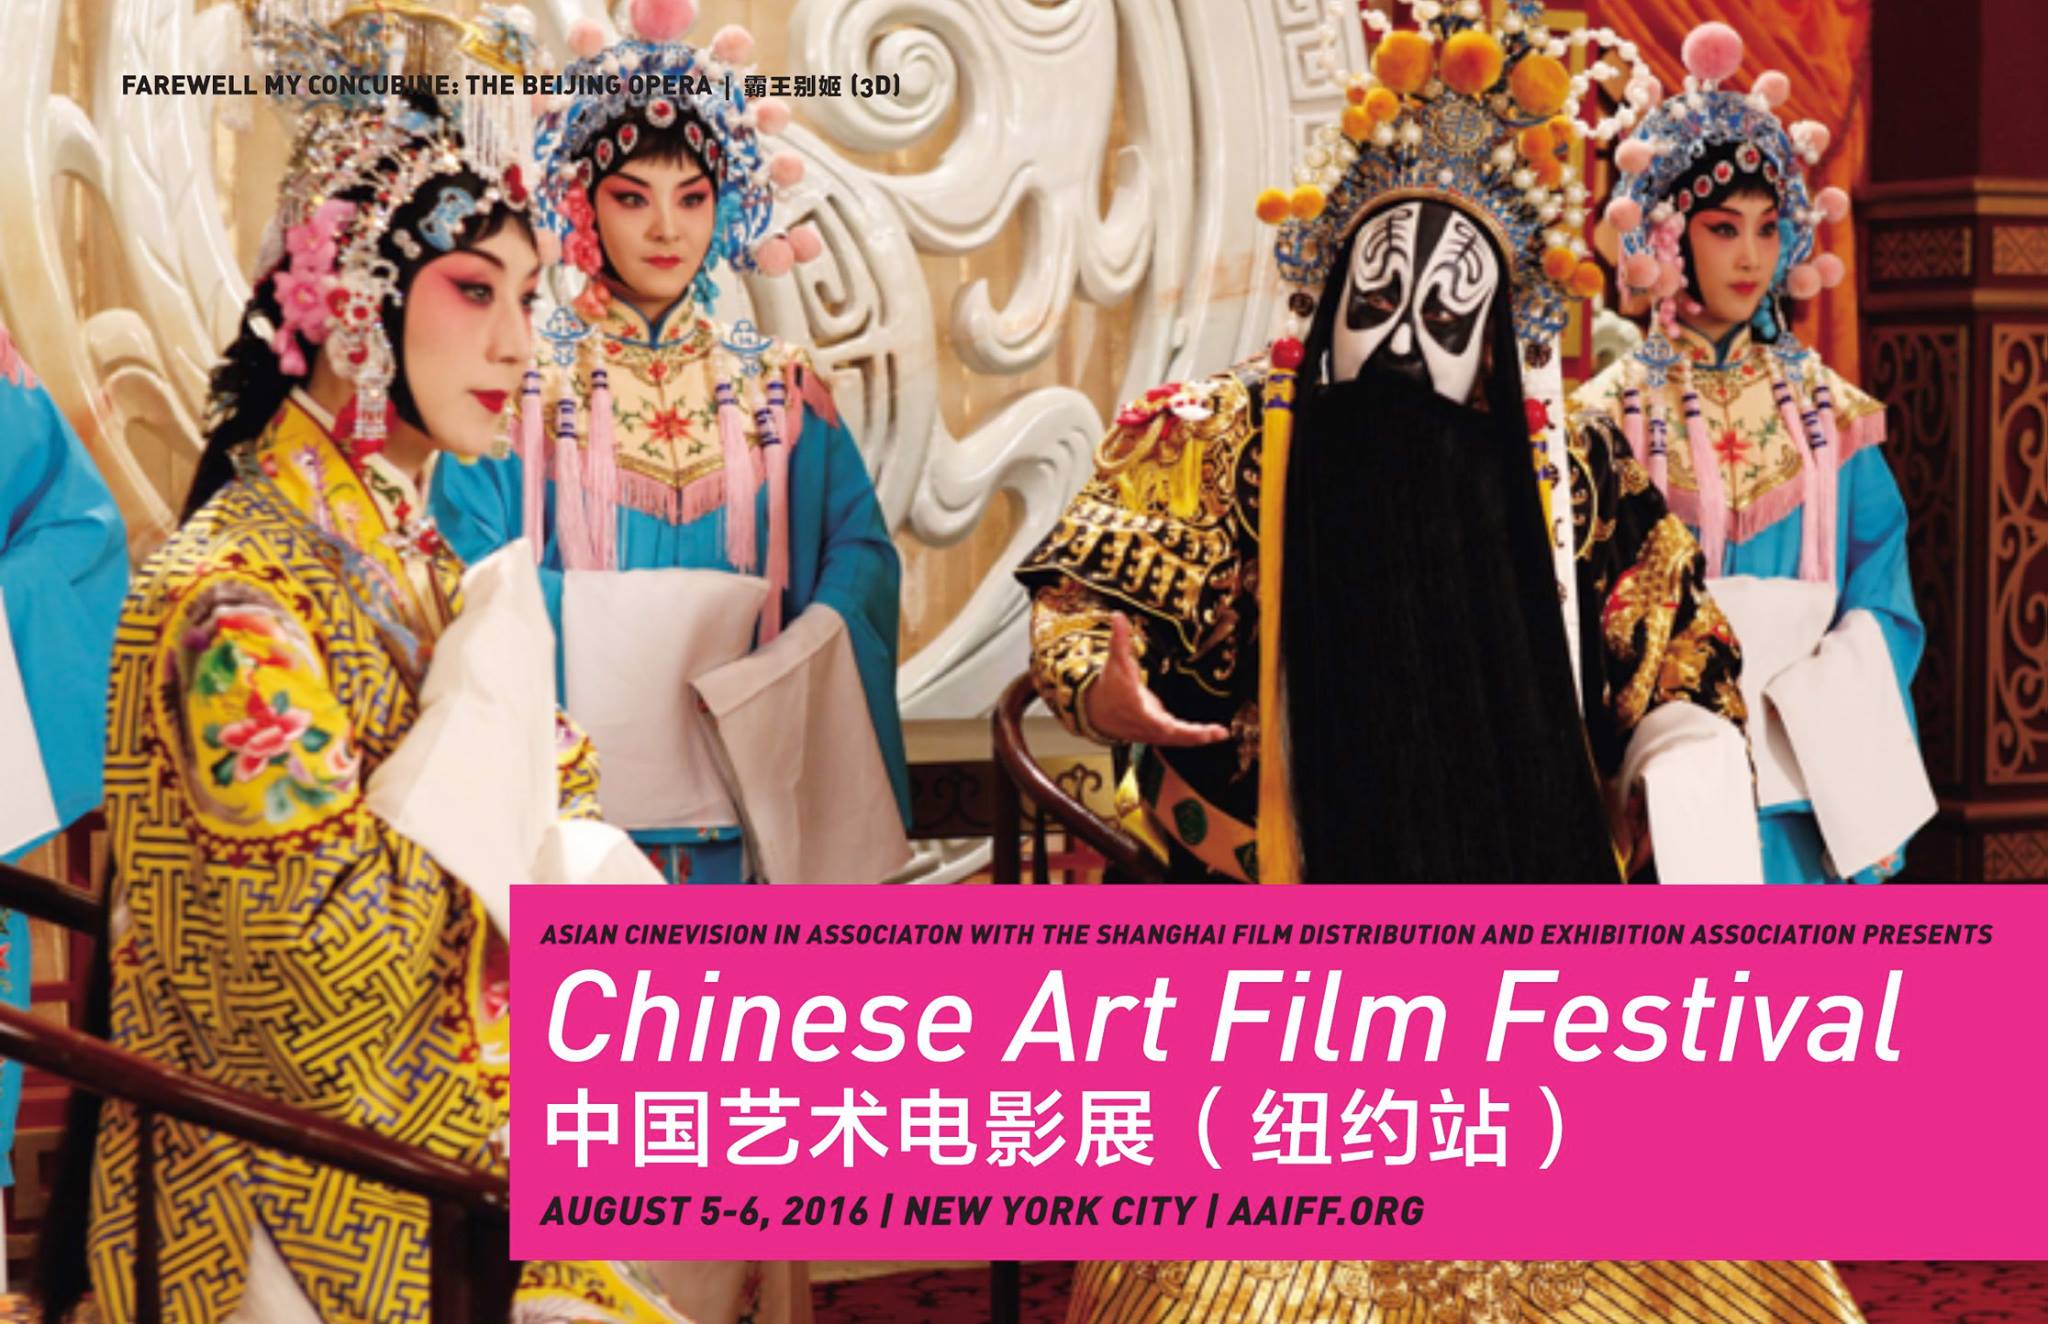  Chinese Art Film Festival